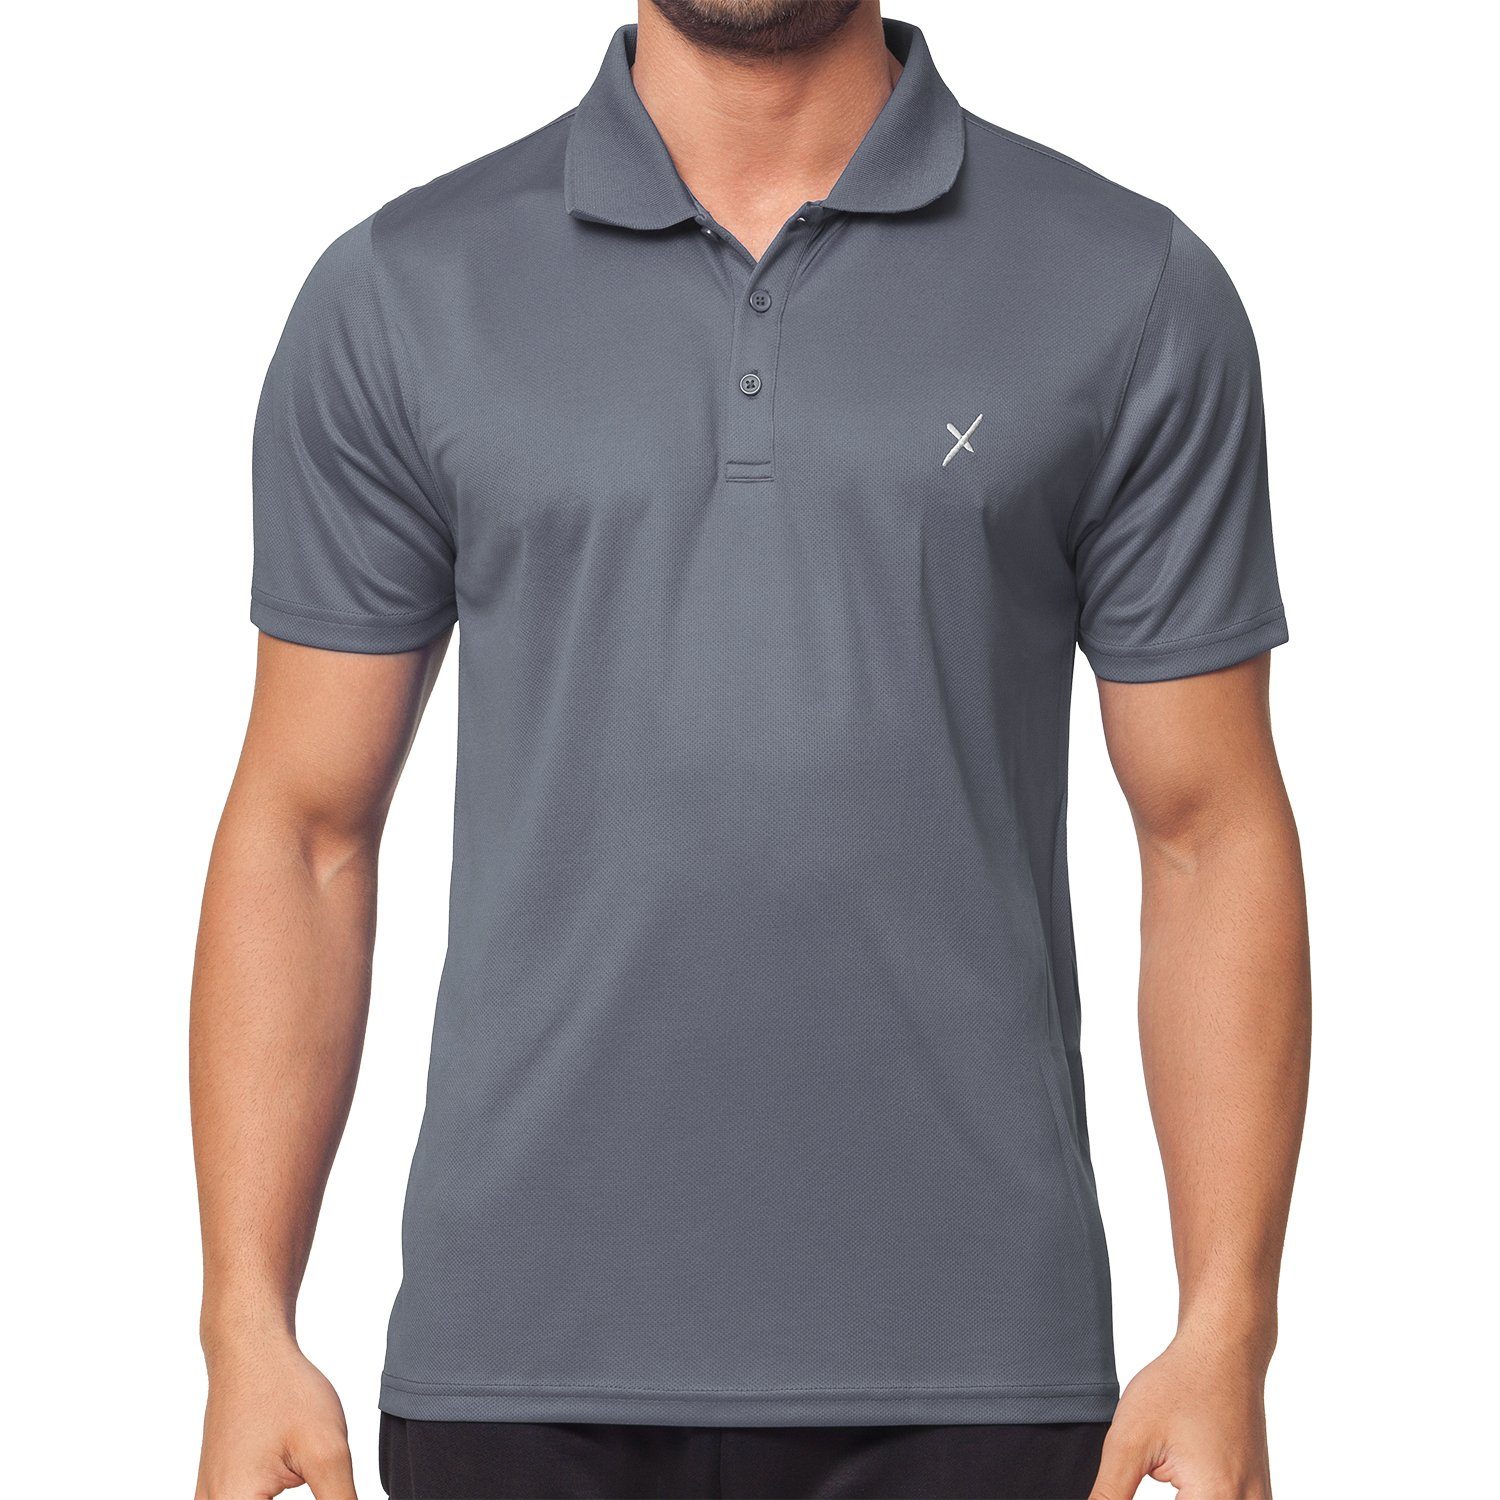 CFLEX Trainingsshirt Sport Herren Grau Fitness Shirt Sportswear Polo-Shirt Collection